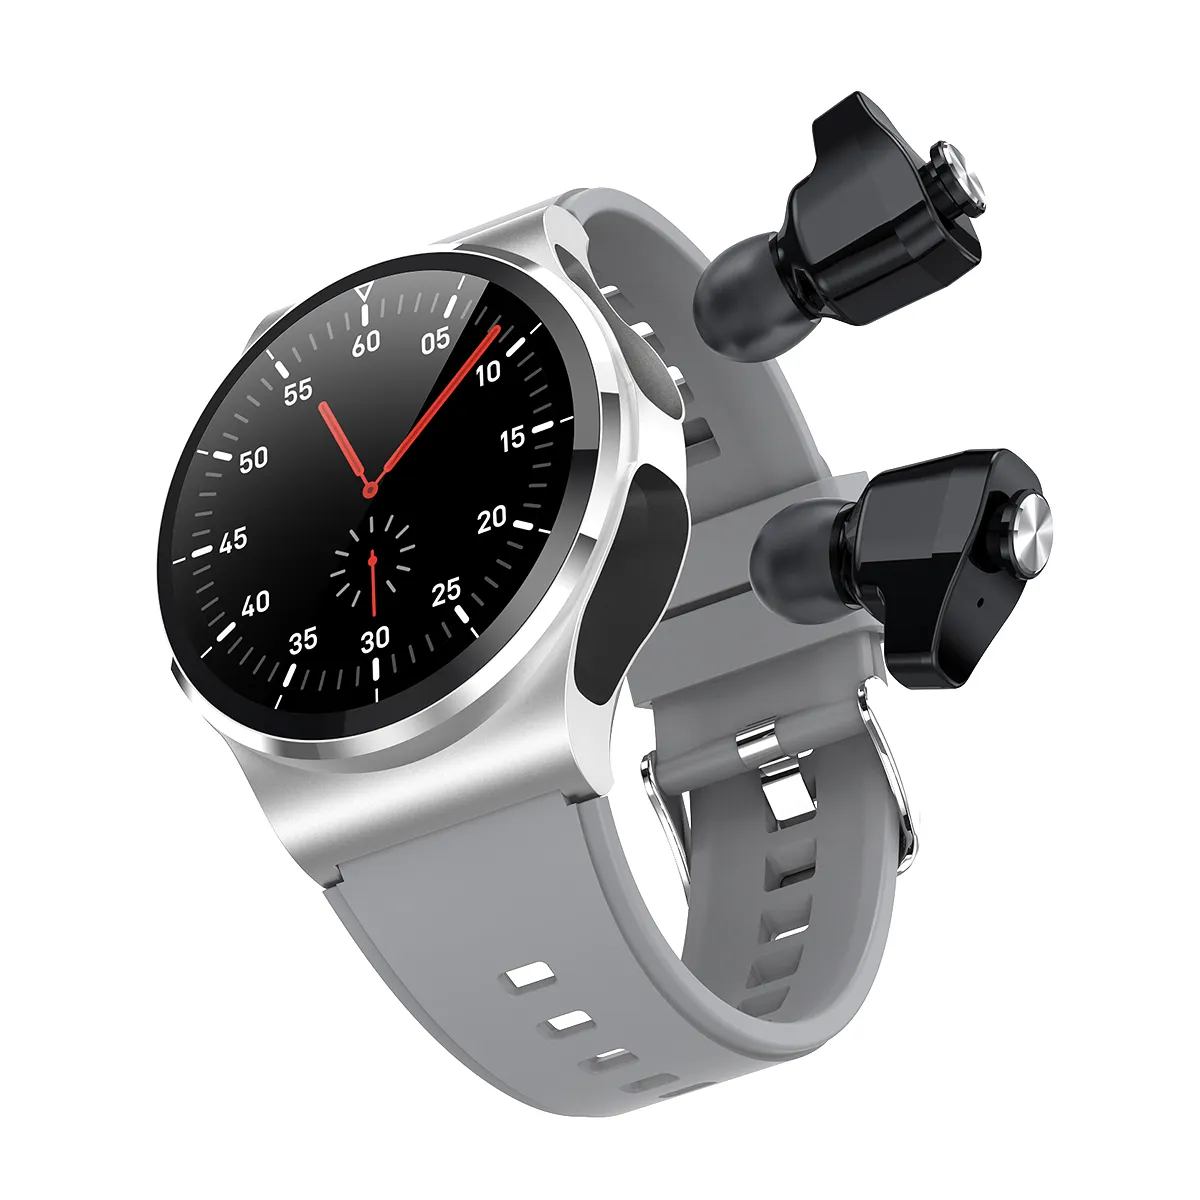 İzle fabrika kaynağı GT69 smartwatch Android TWS 2 in1 akıllı saat kulaklık ile kablosuz kulaklık BT kulaklık